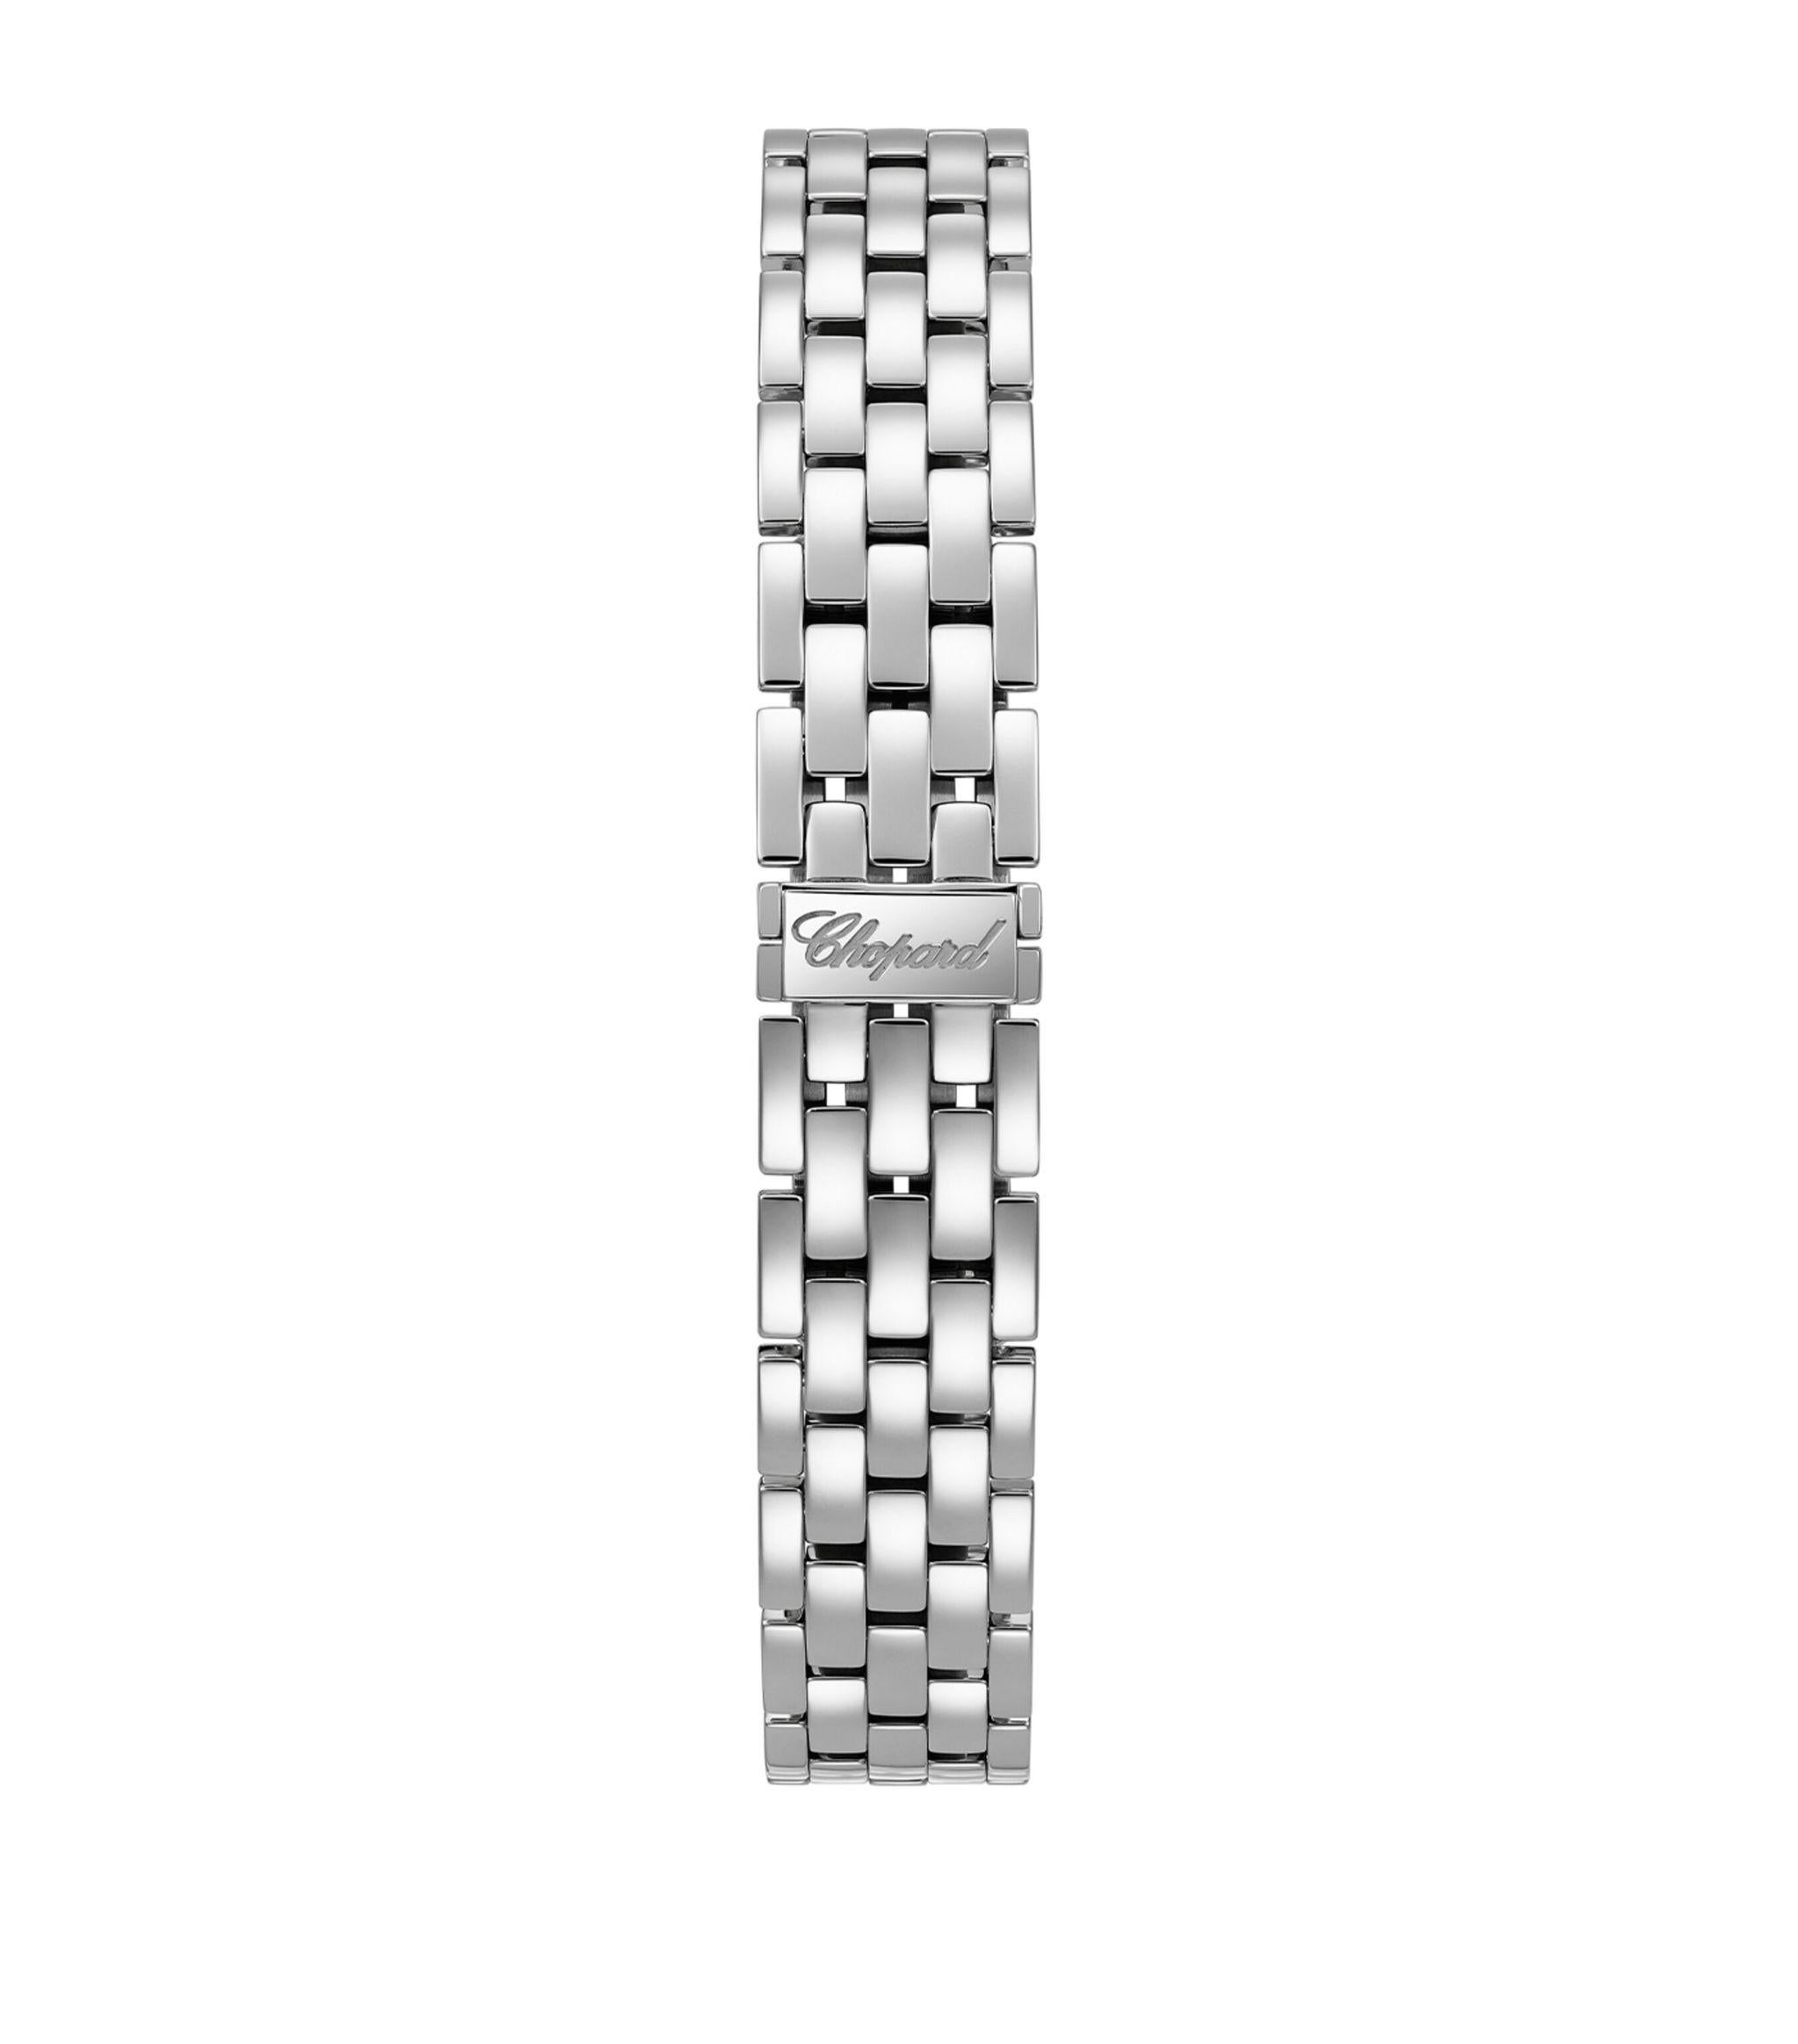 Hier kommt die exquisite Chopard Happy Diamond Watch! Dieser aus luxuriösem 18-karätigem Gold gefertigte Zeitmesser verfügt über ein zartes Armband und ein schlankes 30-mm-Gehäuse. Erleben Sie die Eleganz des Modells Happy Diamond, das mit